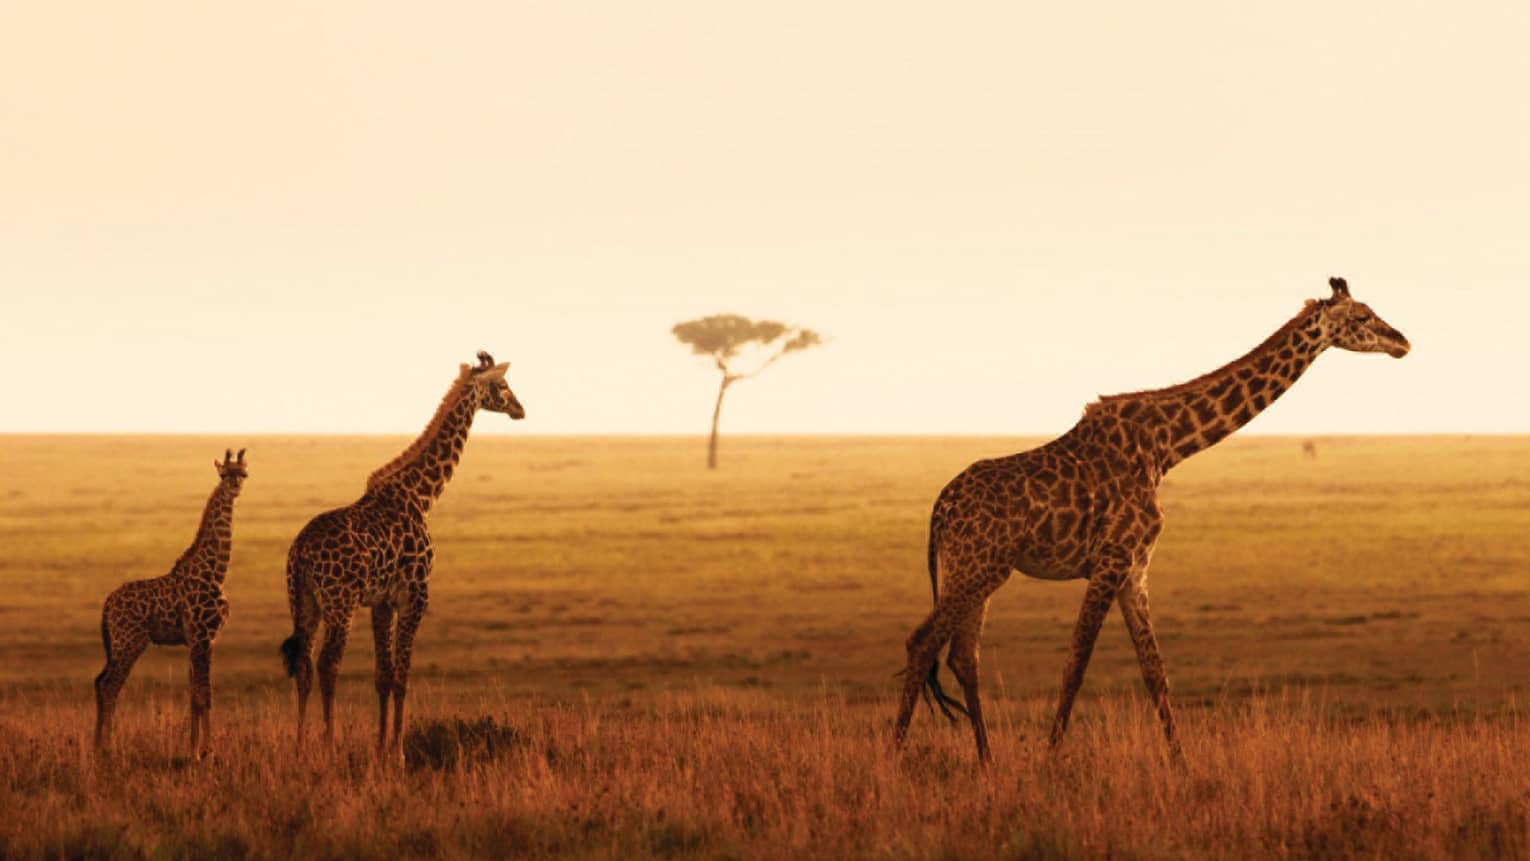 Giraffe family walks along grassy plain during orange sunset